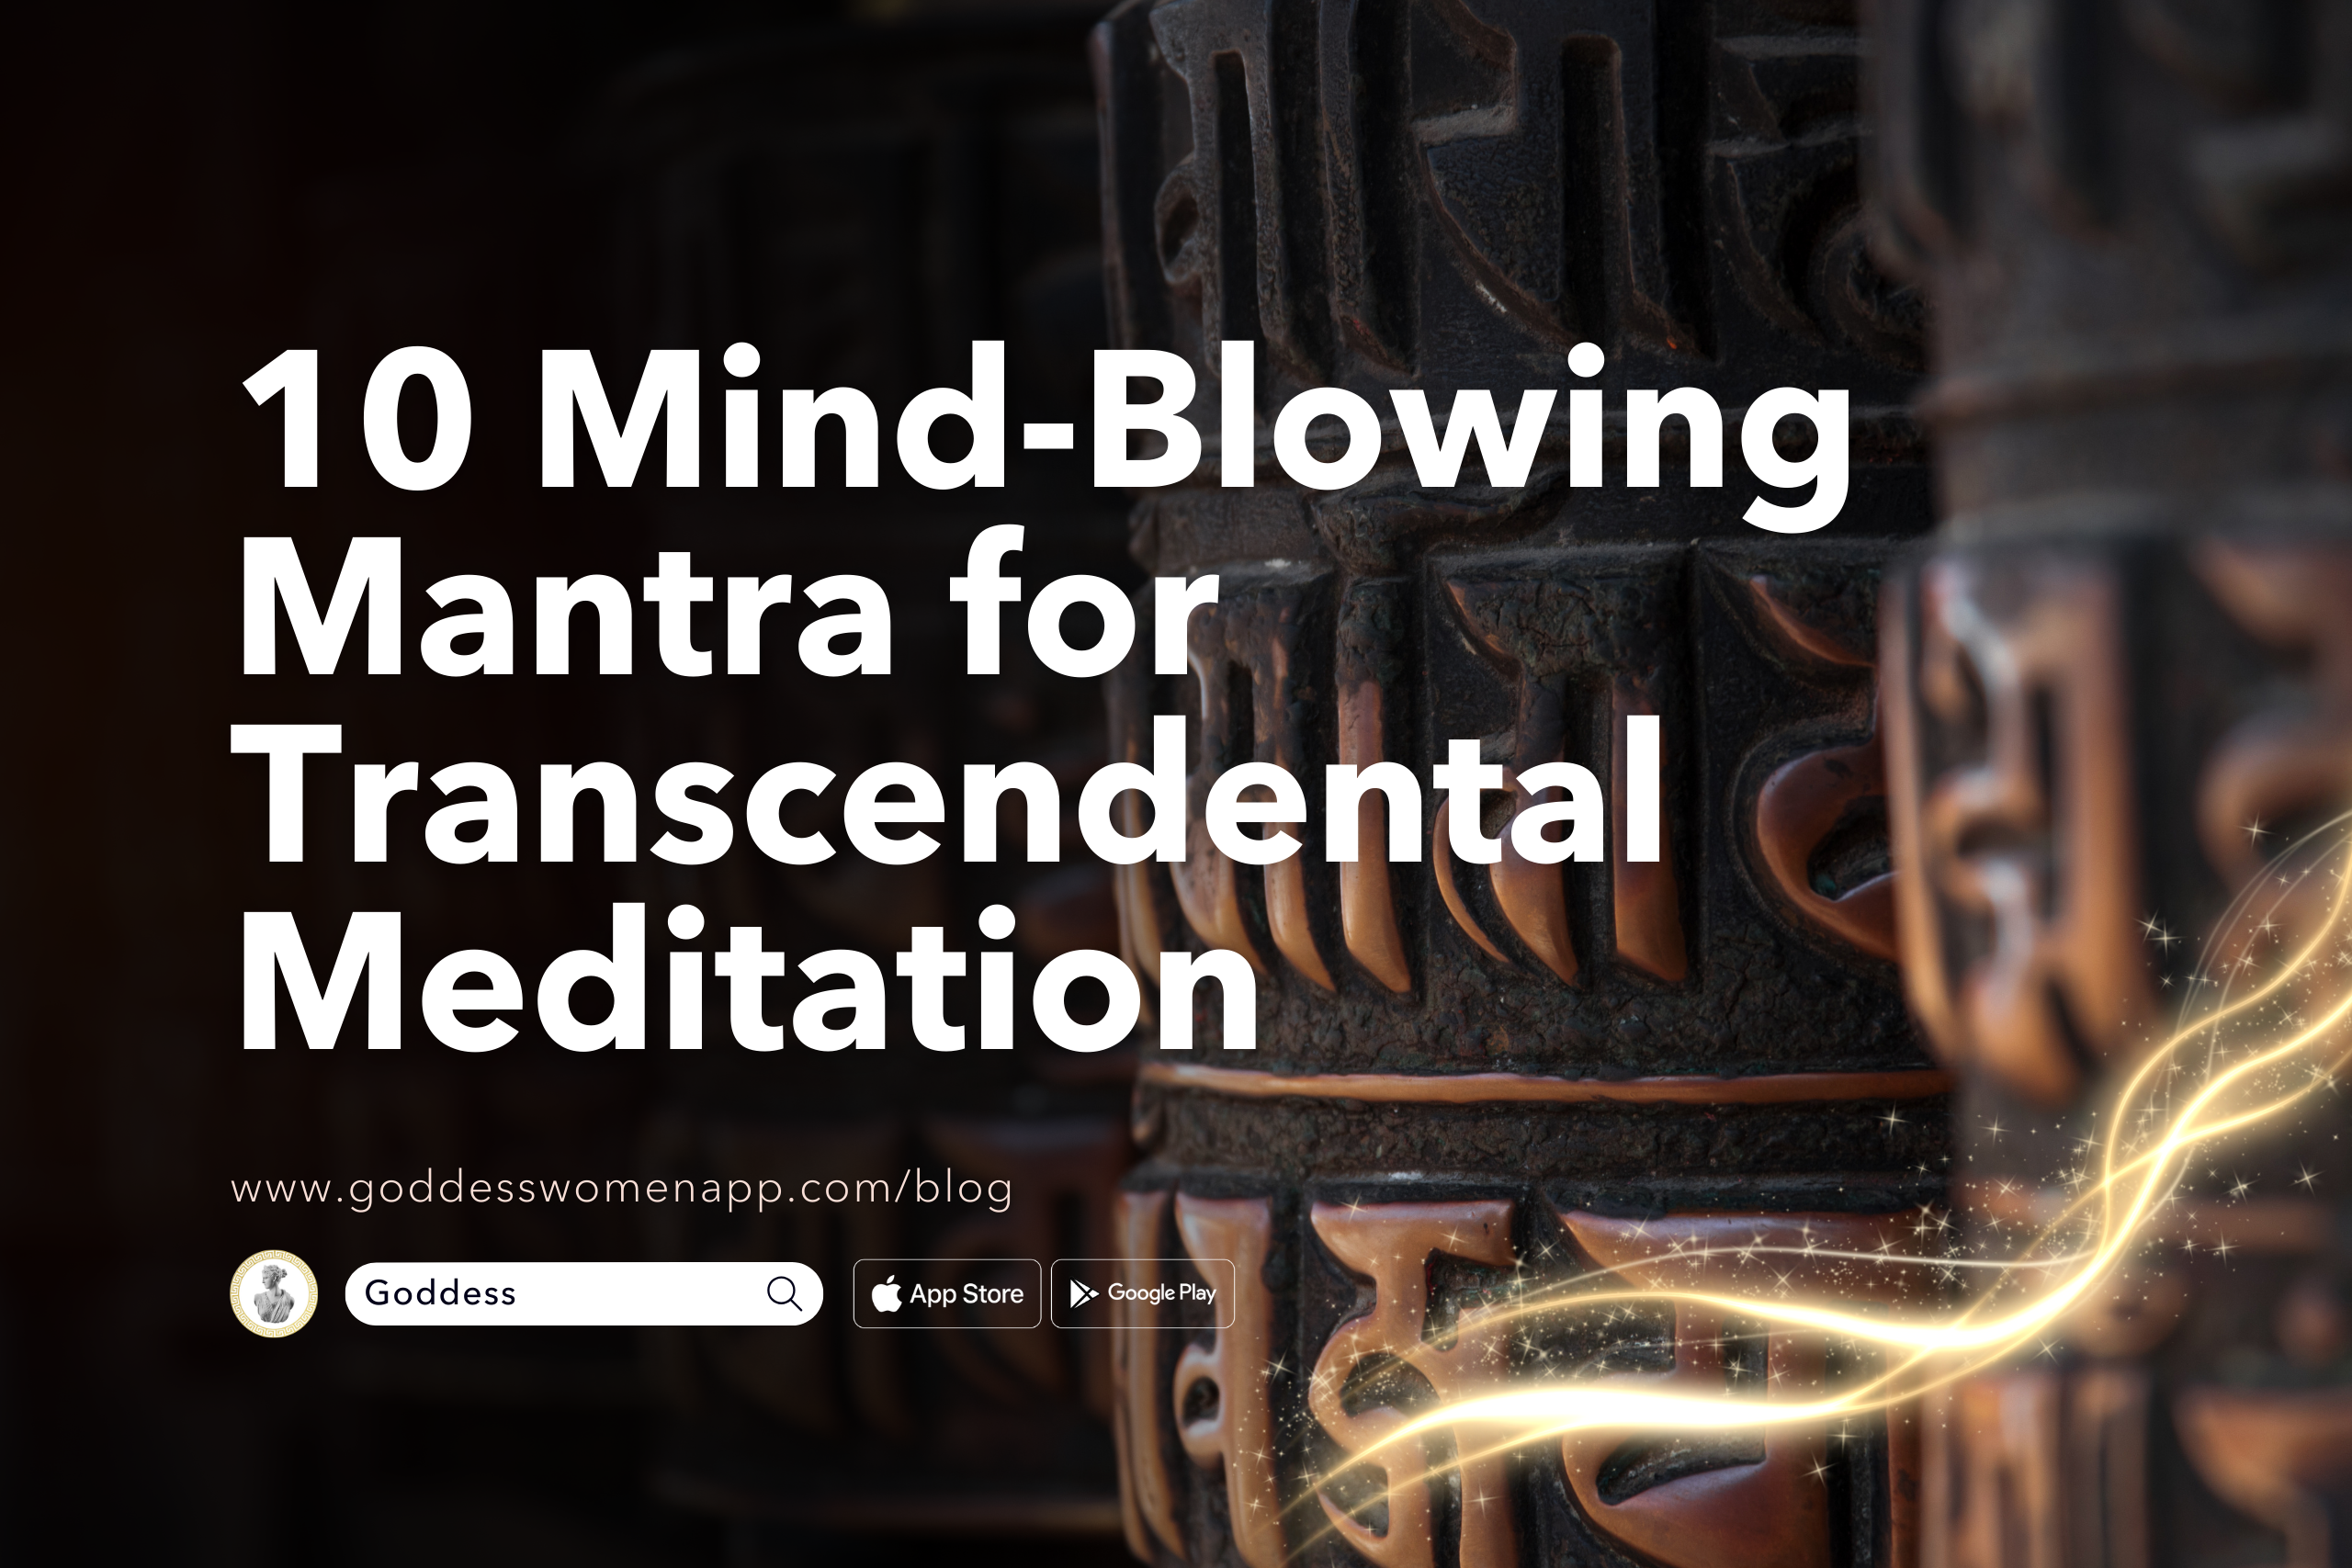 10 Mind-Blowing Mantra for Transcendental Meditation